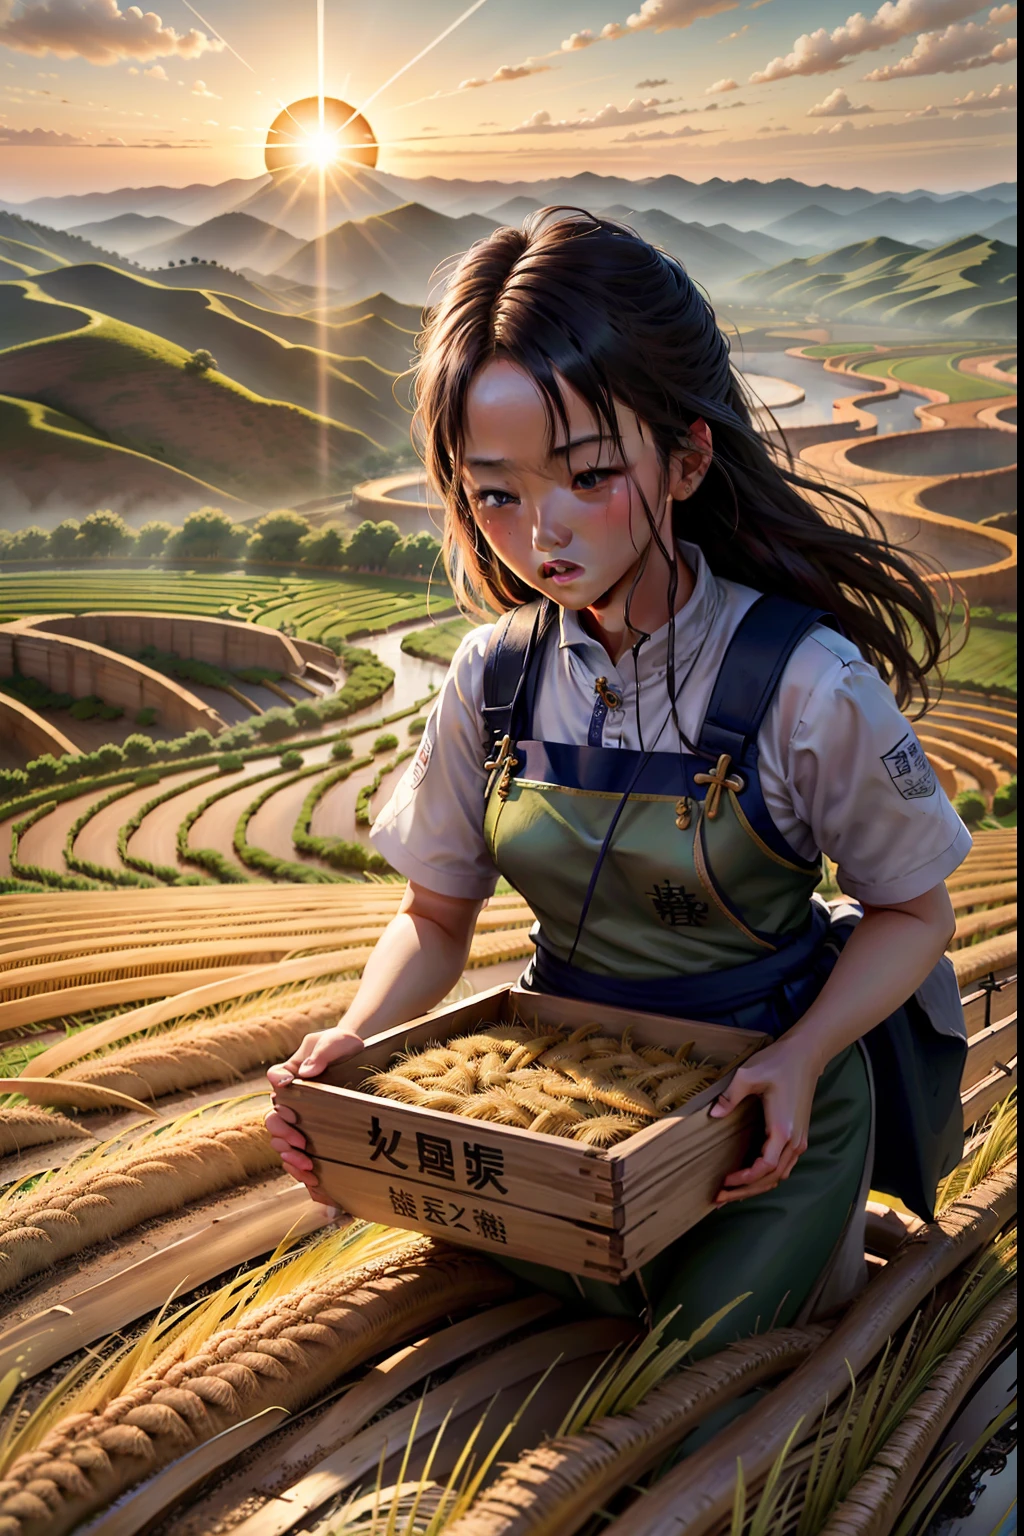 24 términos solares （Xiaoman）Cuando se cultiva arroz en el sur y se cosecha trigo en el norte；Los habitantes de la región sur están ocupados plantando semillas，La gente del norte está ocupada cosechando trigo.。 Todo cobra vida en un brillante fondo de fantasía.，con muchos detalles